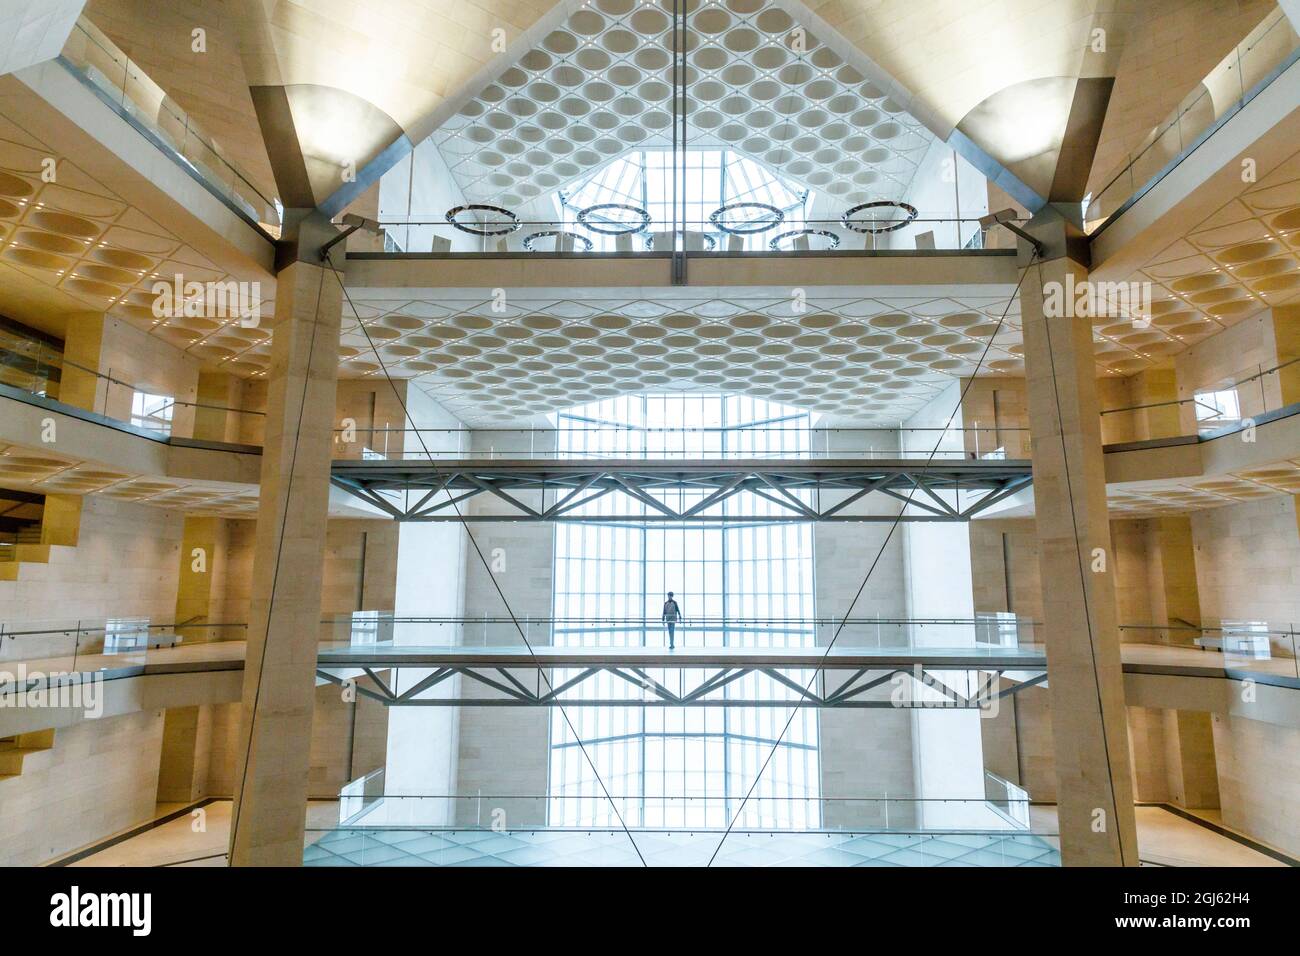 Katar, Doha. Innenraum des Museums für Islamische Kunst, erbaut 2008. Fenster mit Blick vom Boden bis zur Decke. (Nur Für Redaktionelle Zwecke) Stockfoto